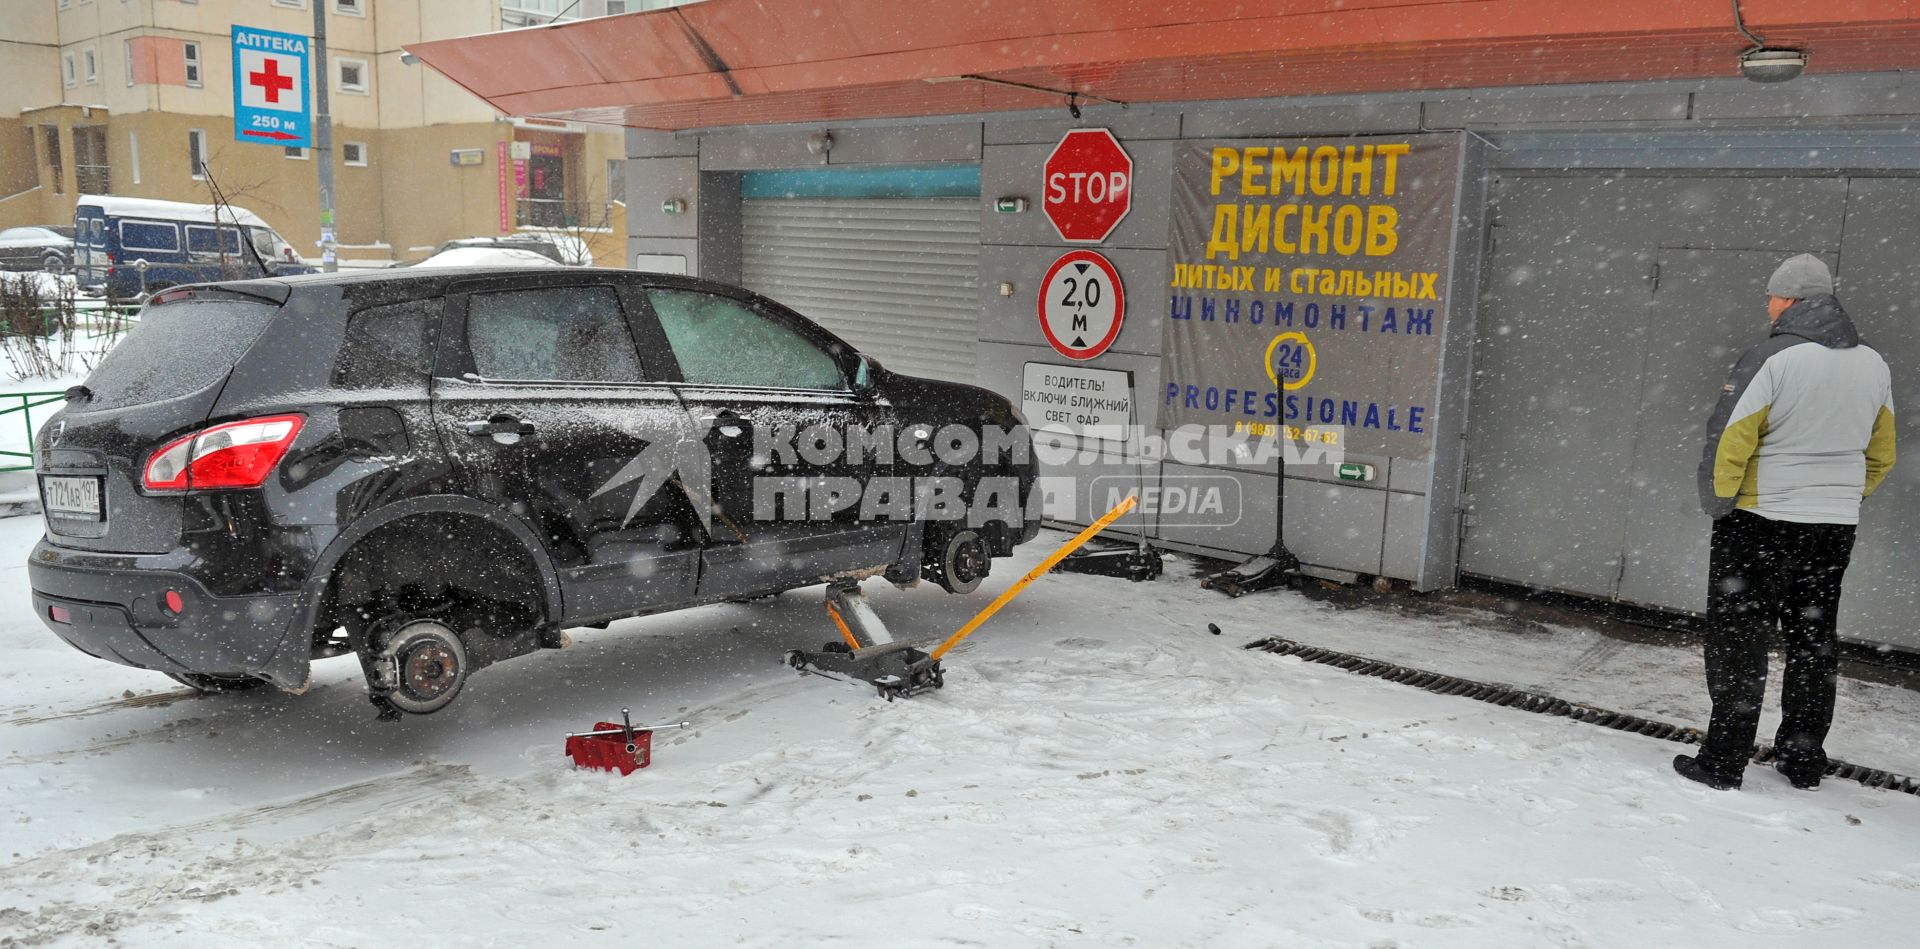 Мужчина около автосервиса переобувает свой автомобиль в зимнюю резину.